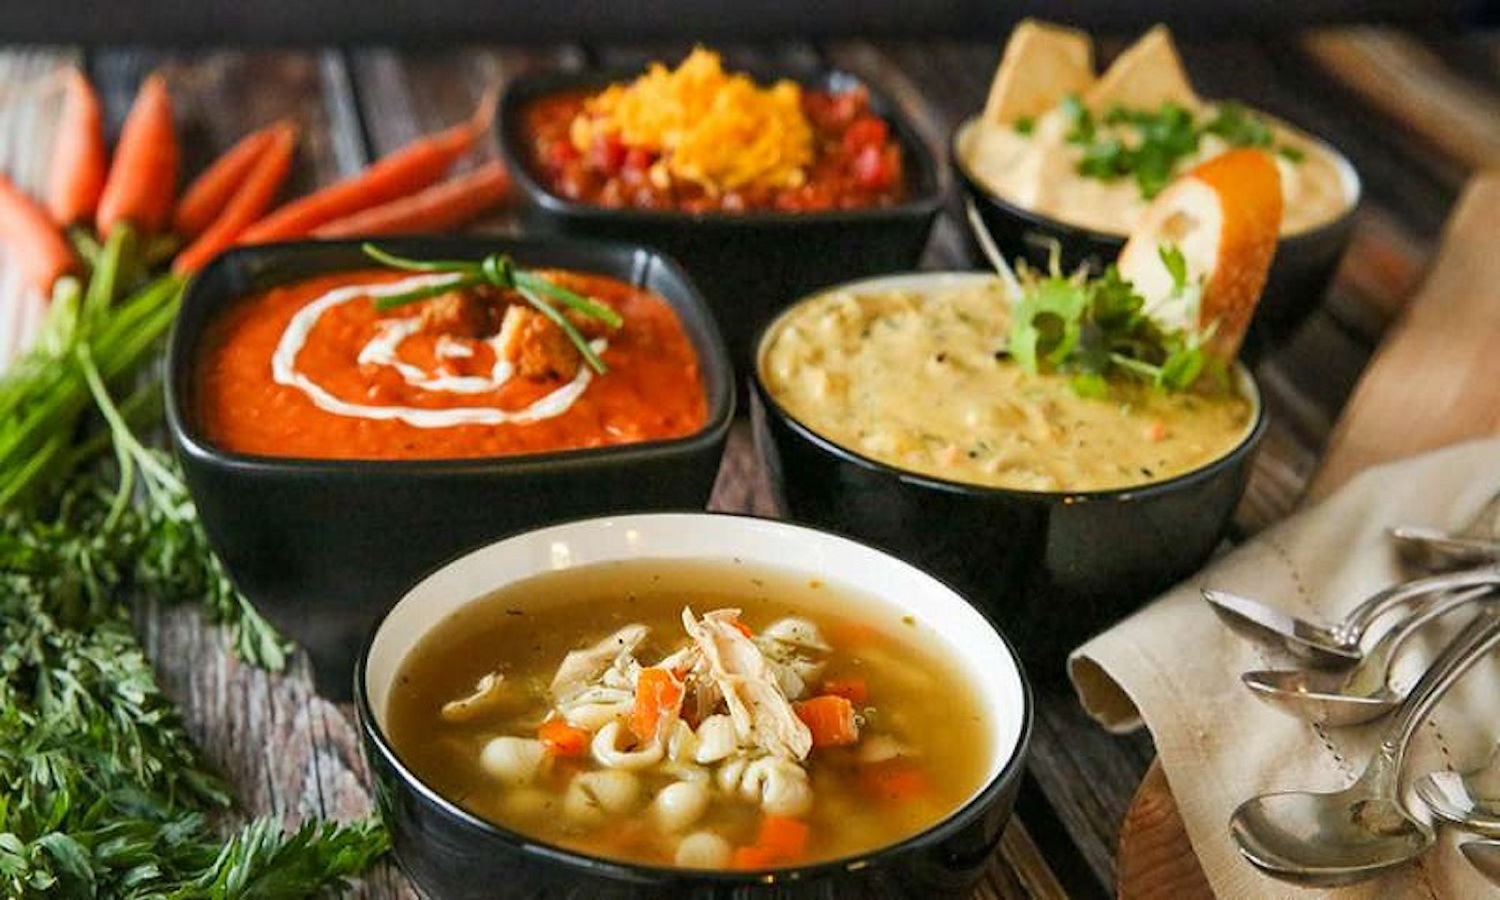 تاریخچه غذایی خوشمزه و مقوی به نام سوپ